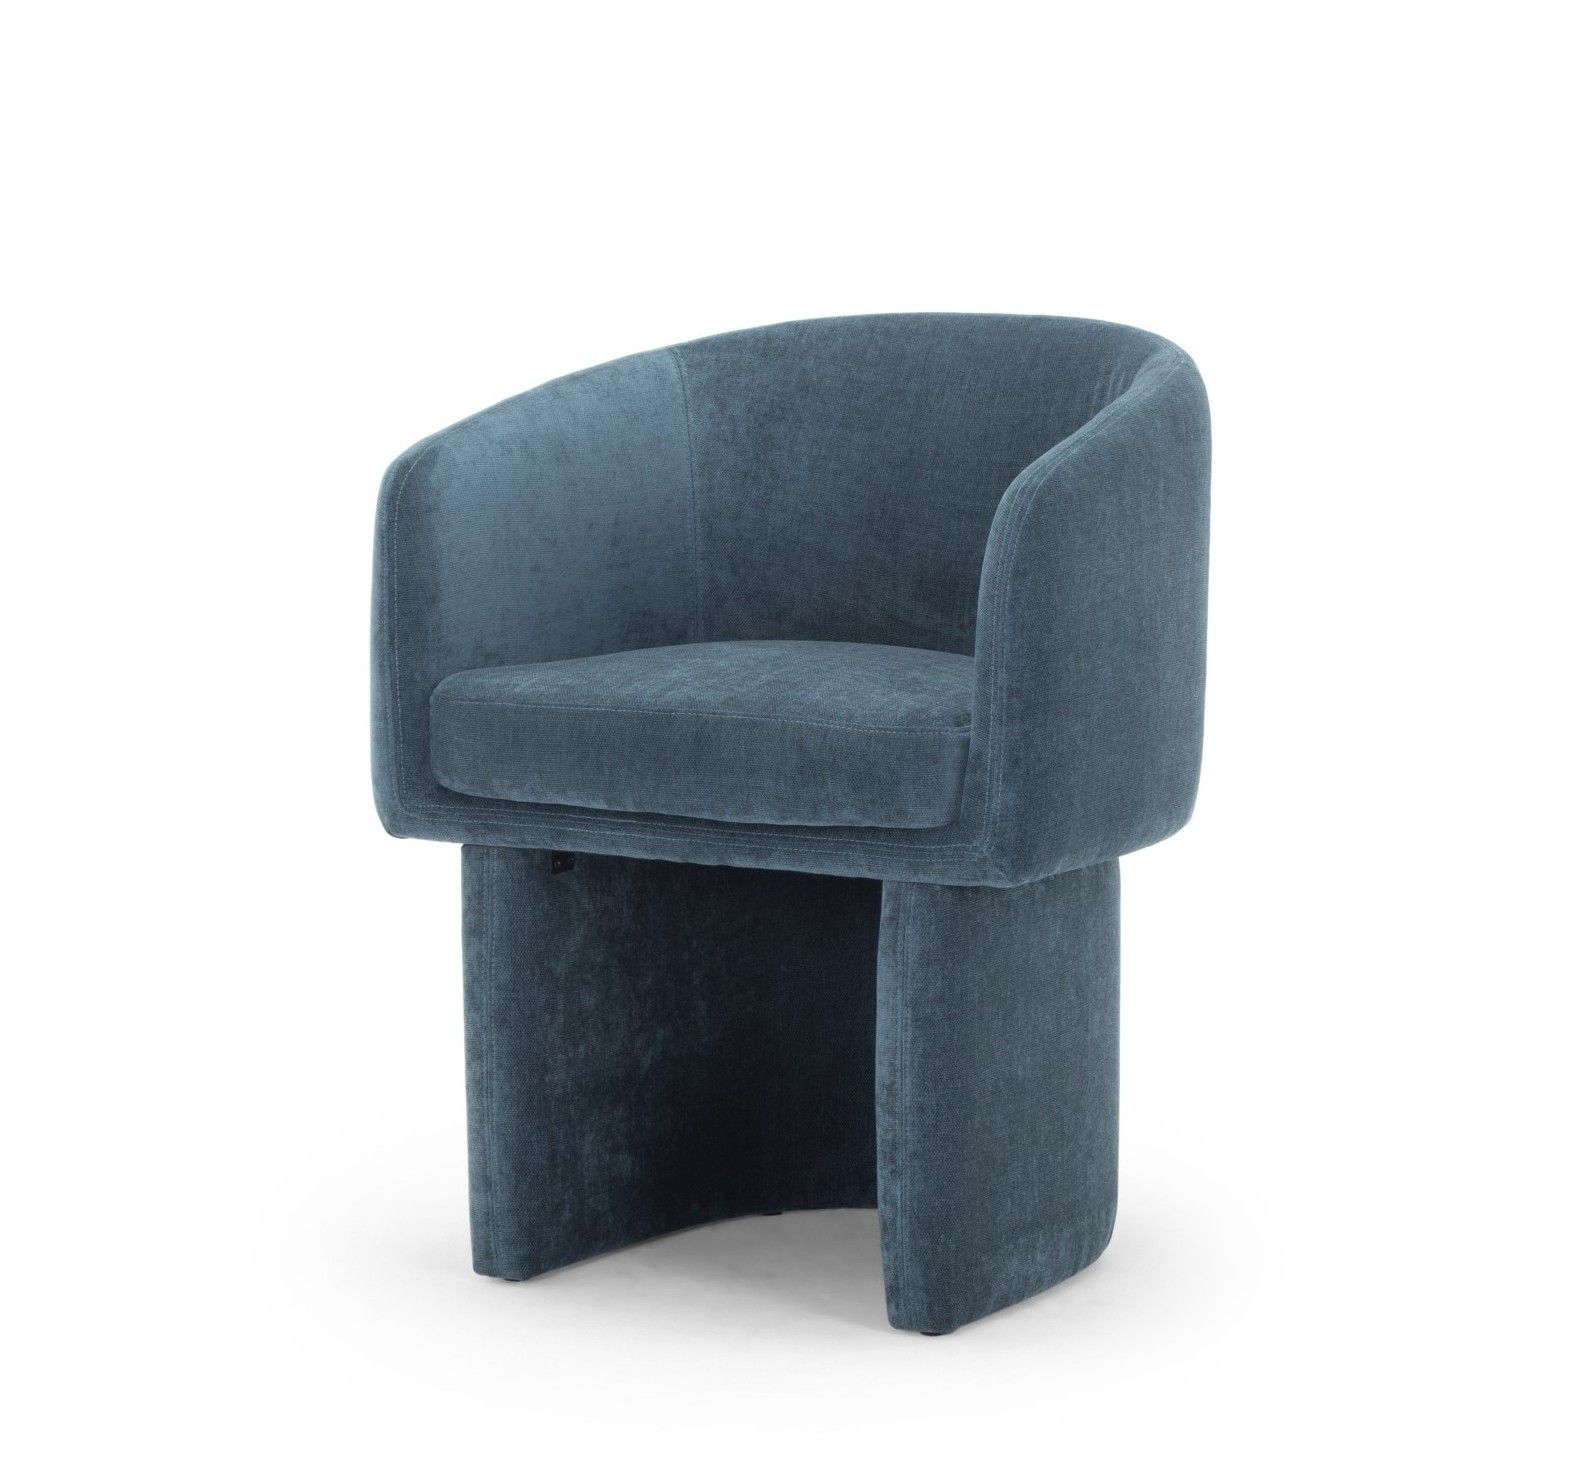 Raine Dining Chair - Dusty Blue